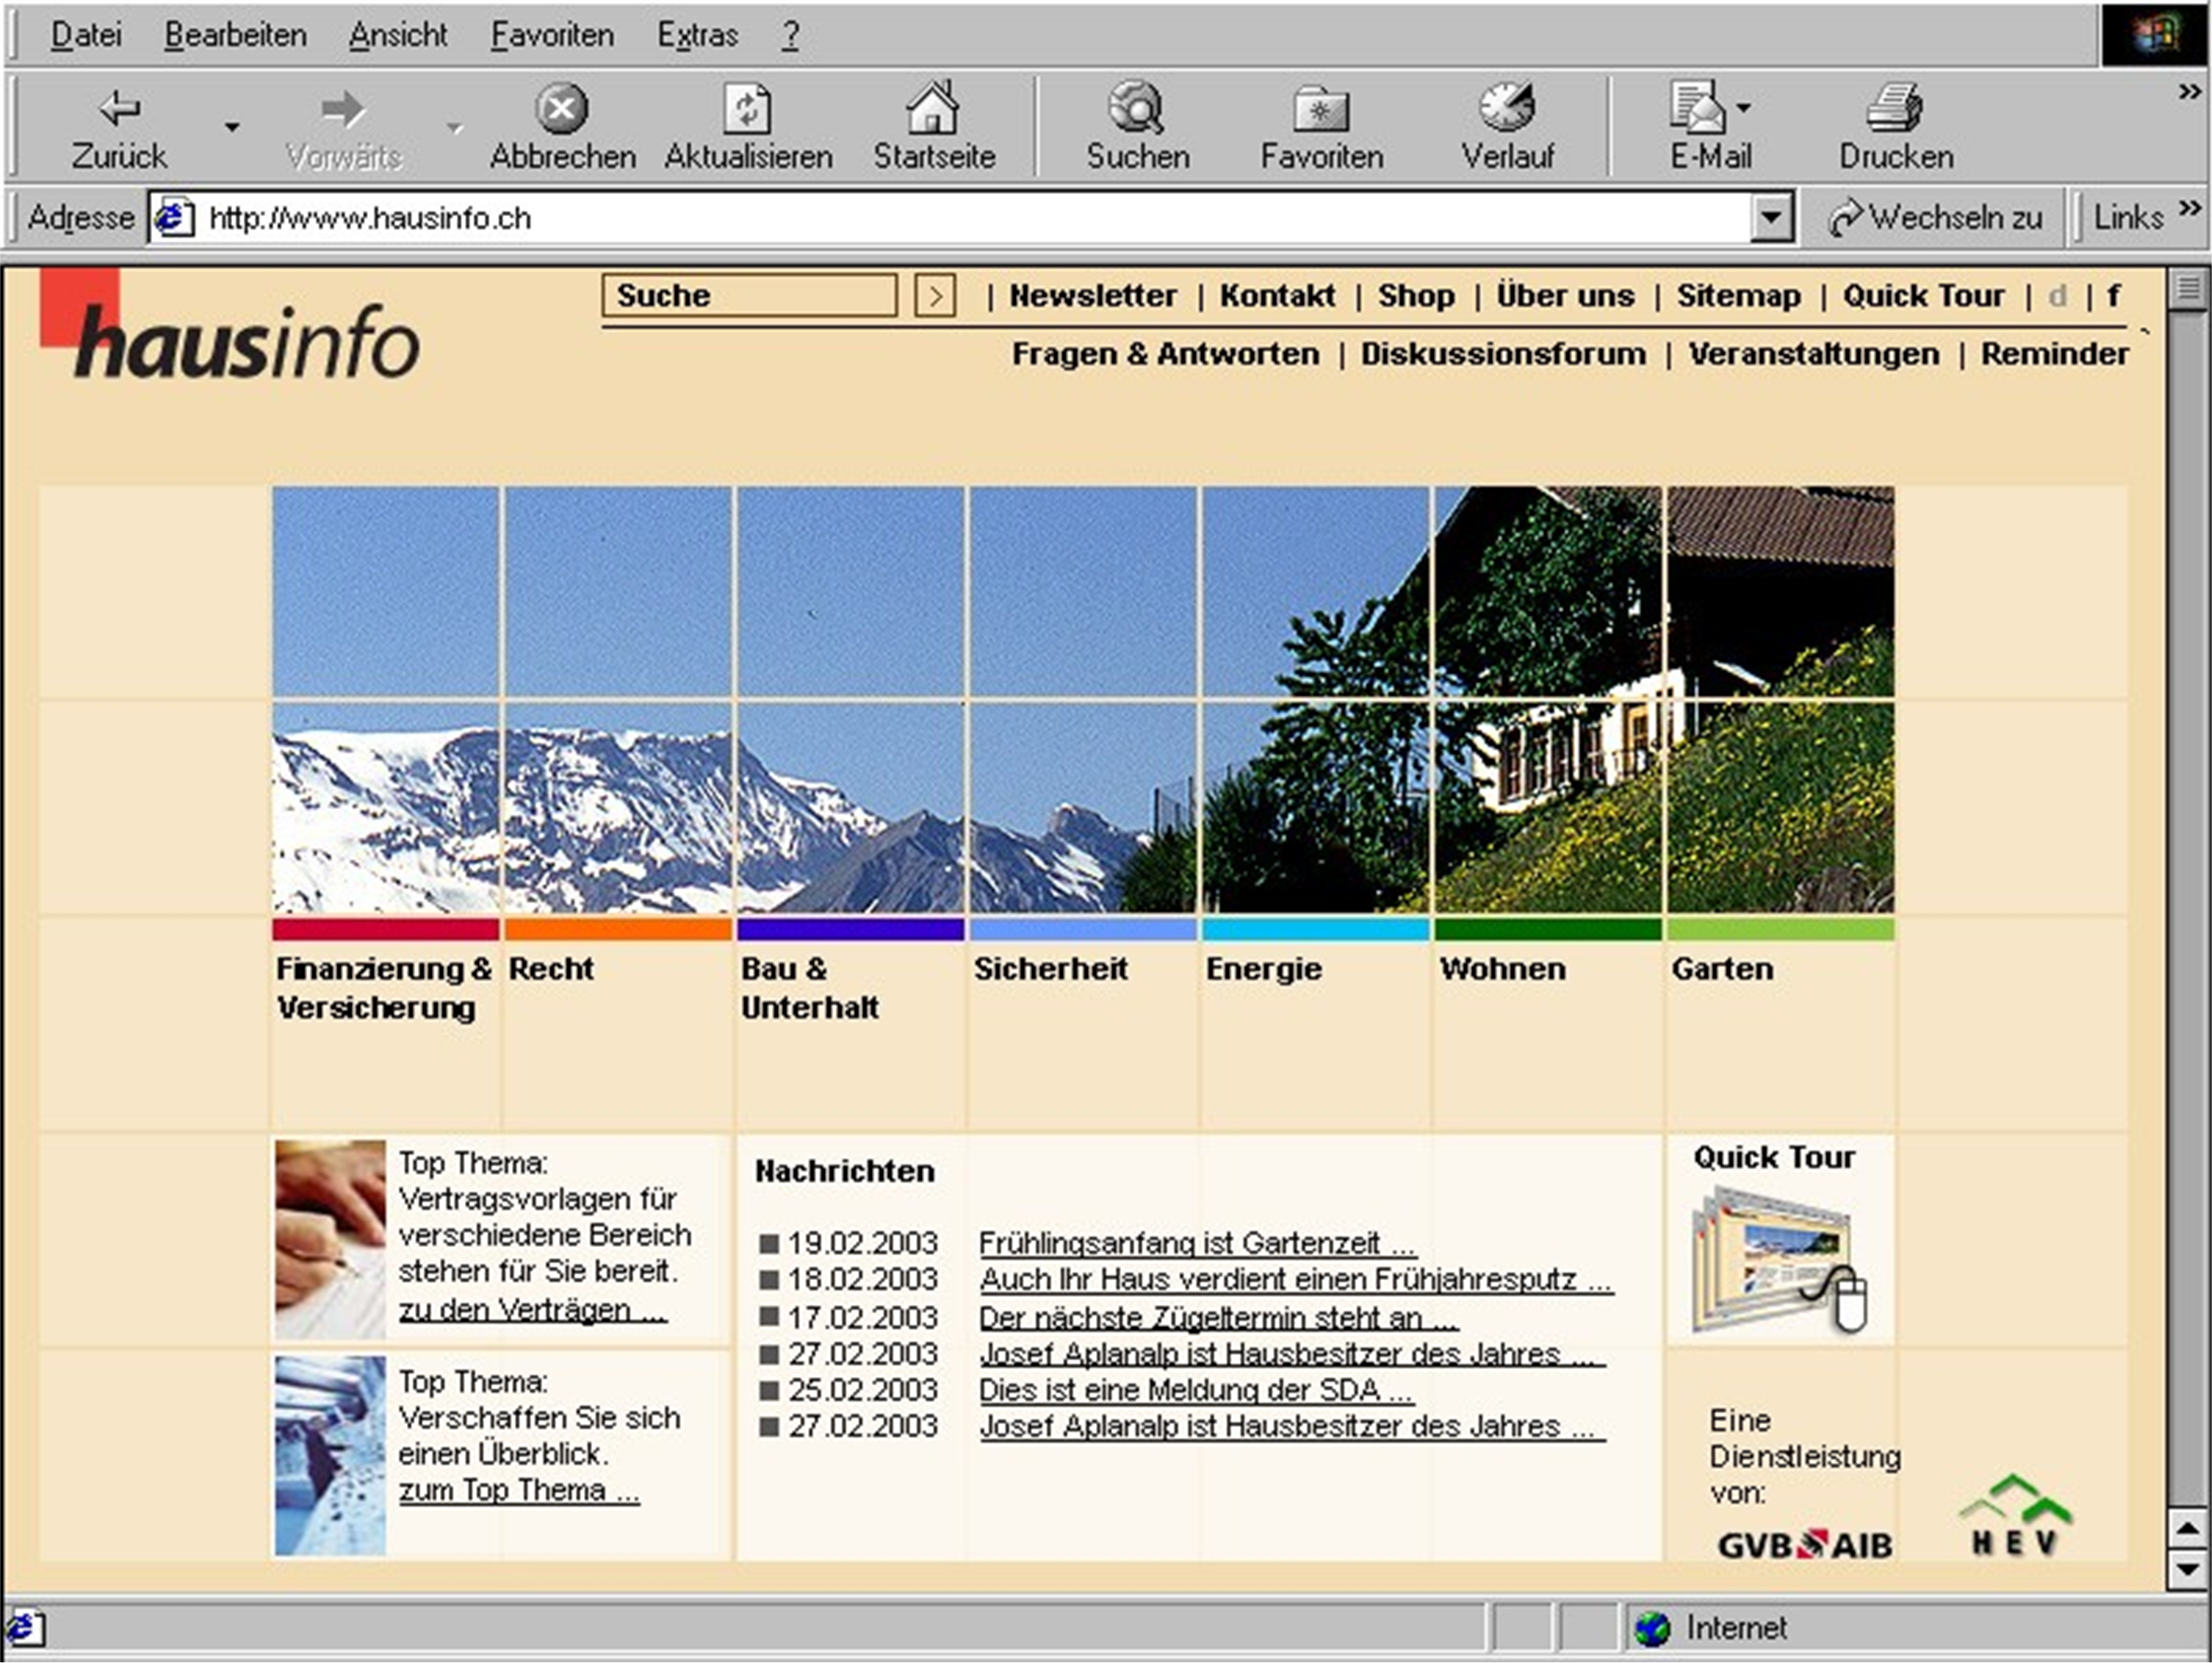 Die Online-Plattform hausinfo.ch in ihrem alten Design im Jahr 2003